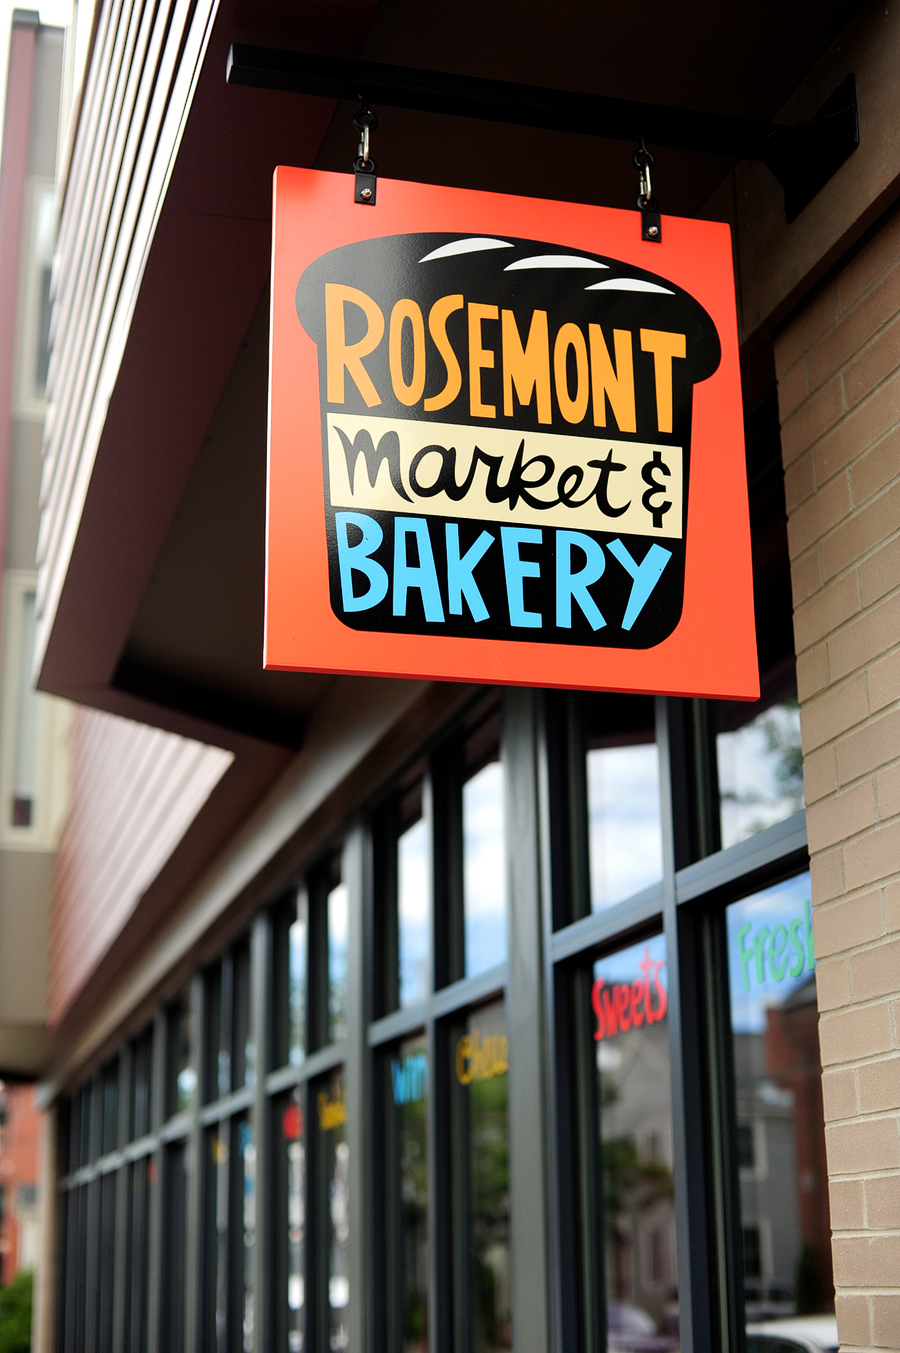 Rosemont Market